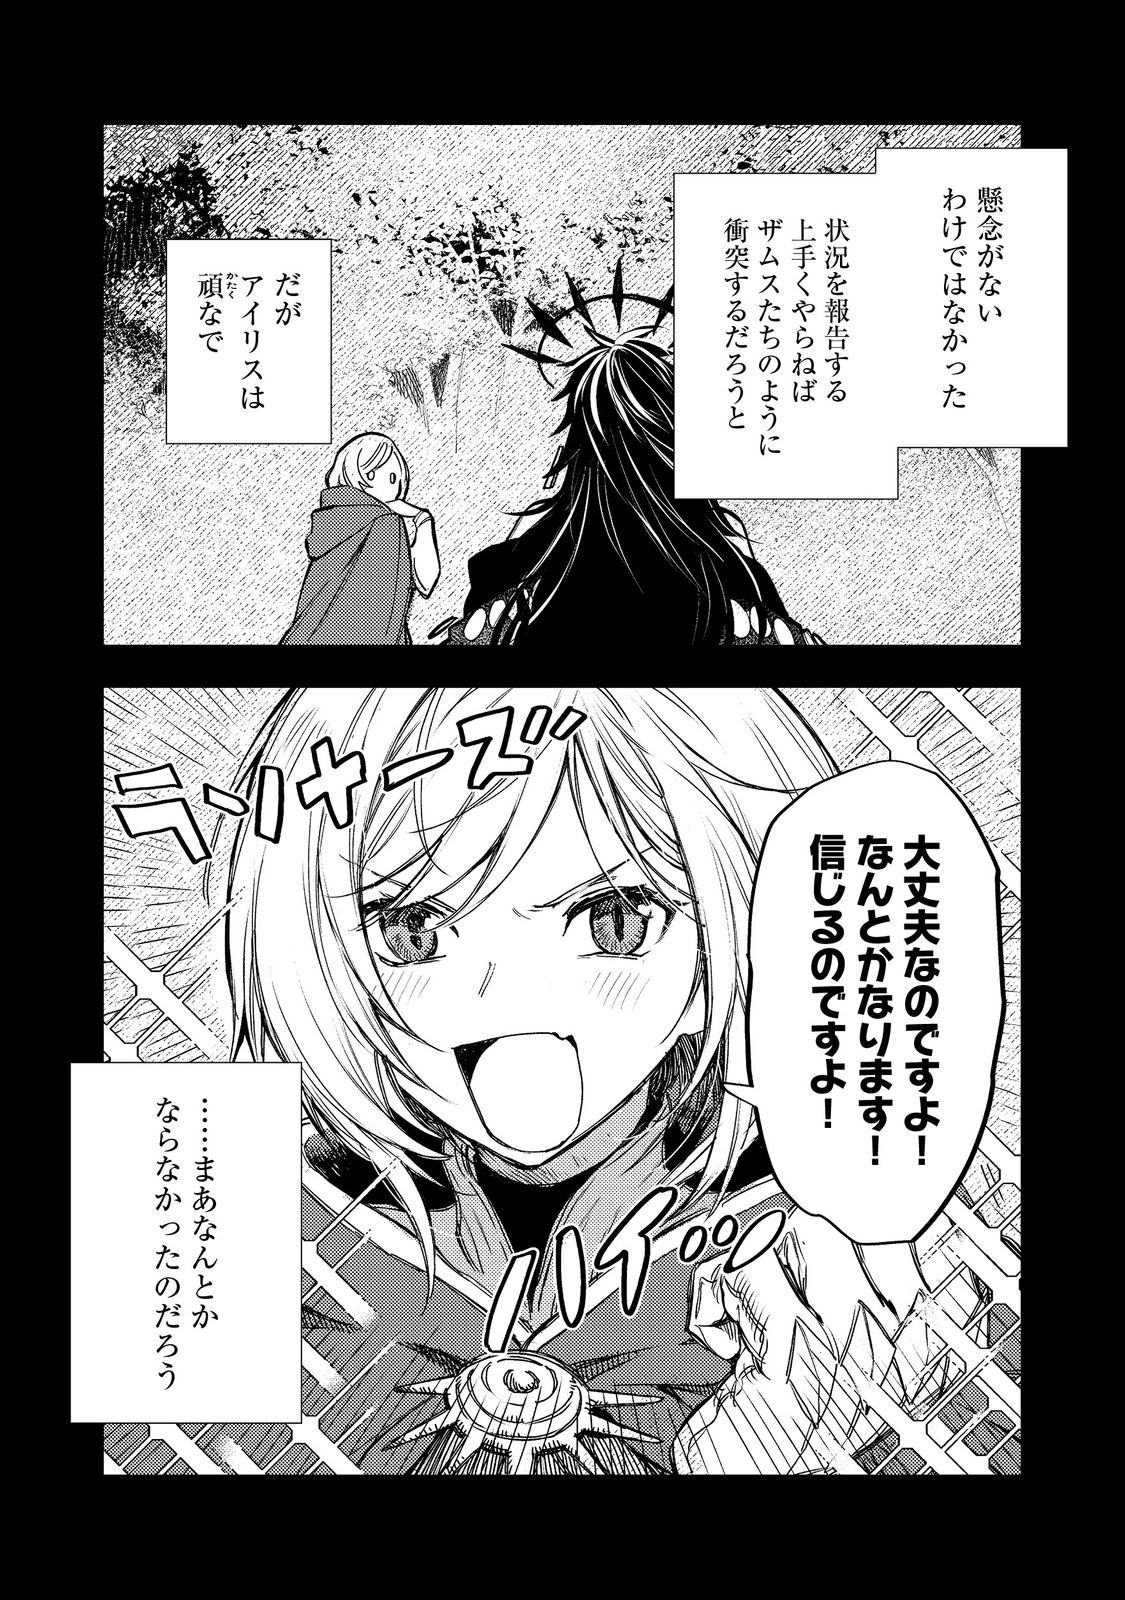 Meiou-sama ga Tooru no desu yo! - Chapter 14 - Page 1